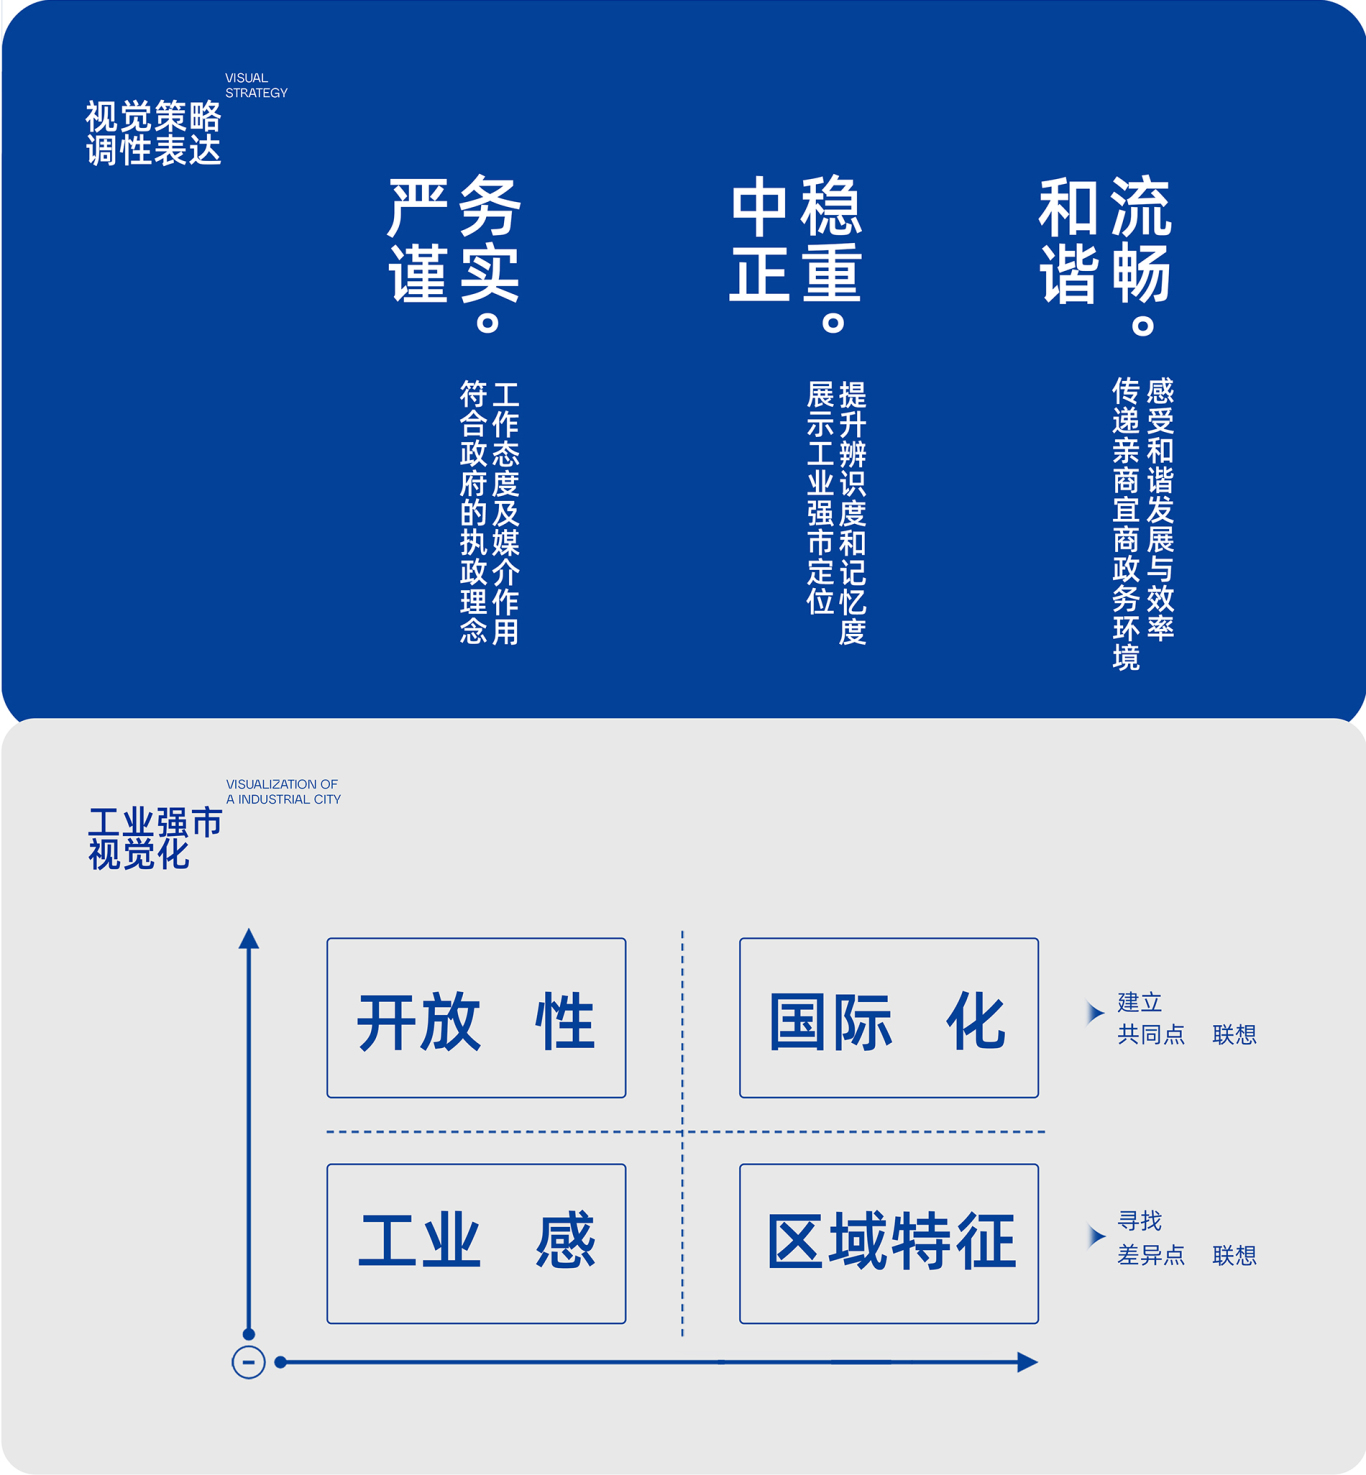 高新科技 智慧 字母類LOGO設計—江油高新區科技產業園品牌形象 標志VI升級圖5